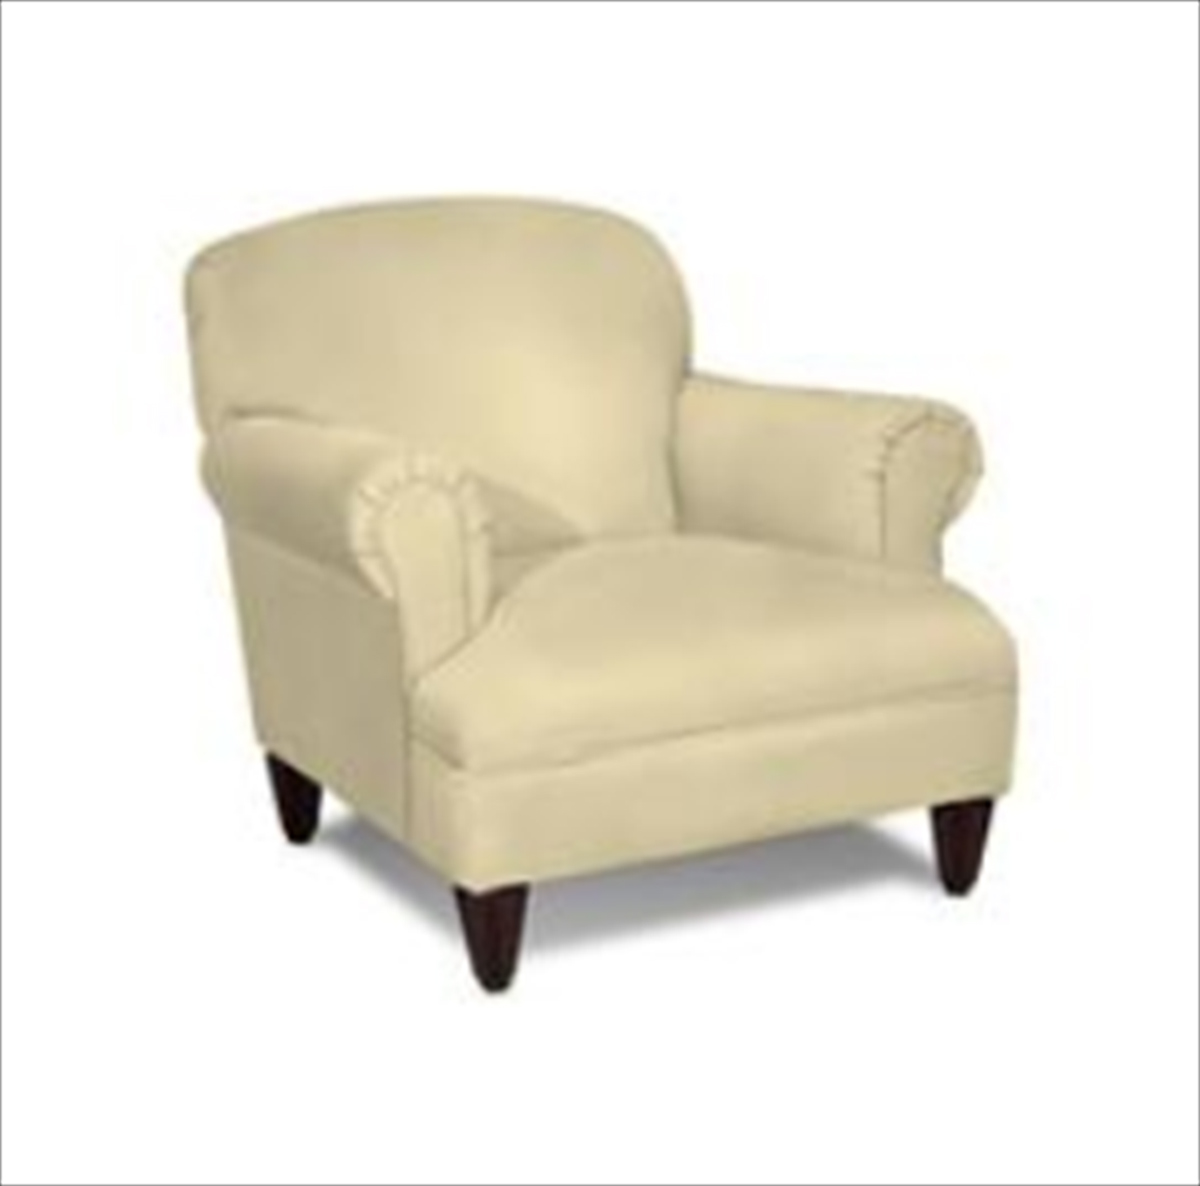 Klaussner Wrigley Chair - Belsire Buckwheat